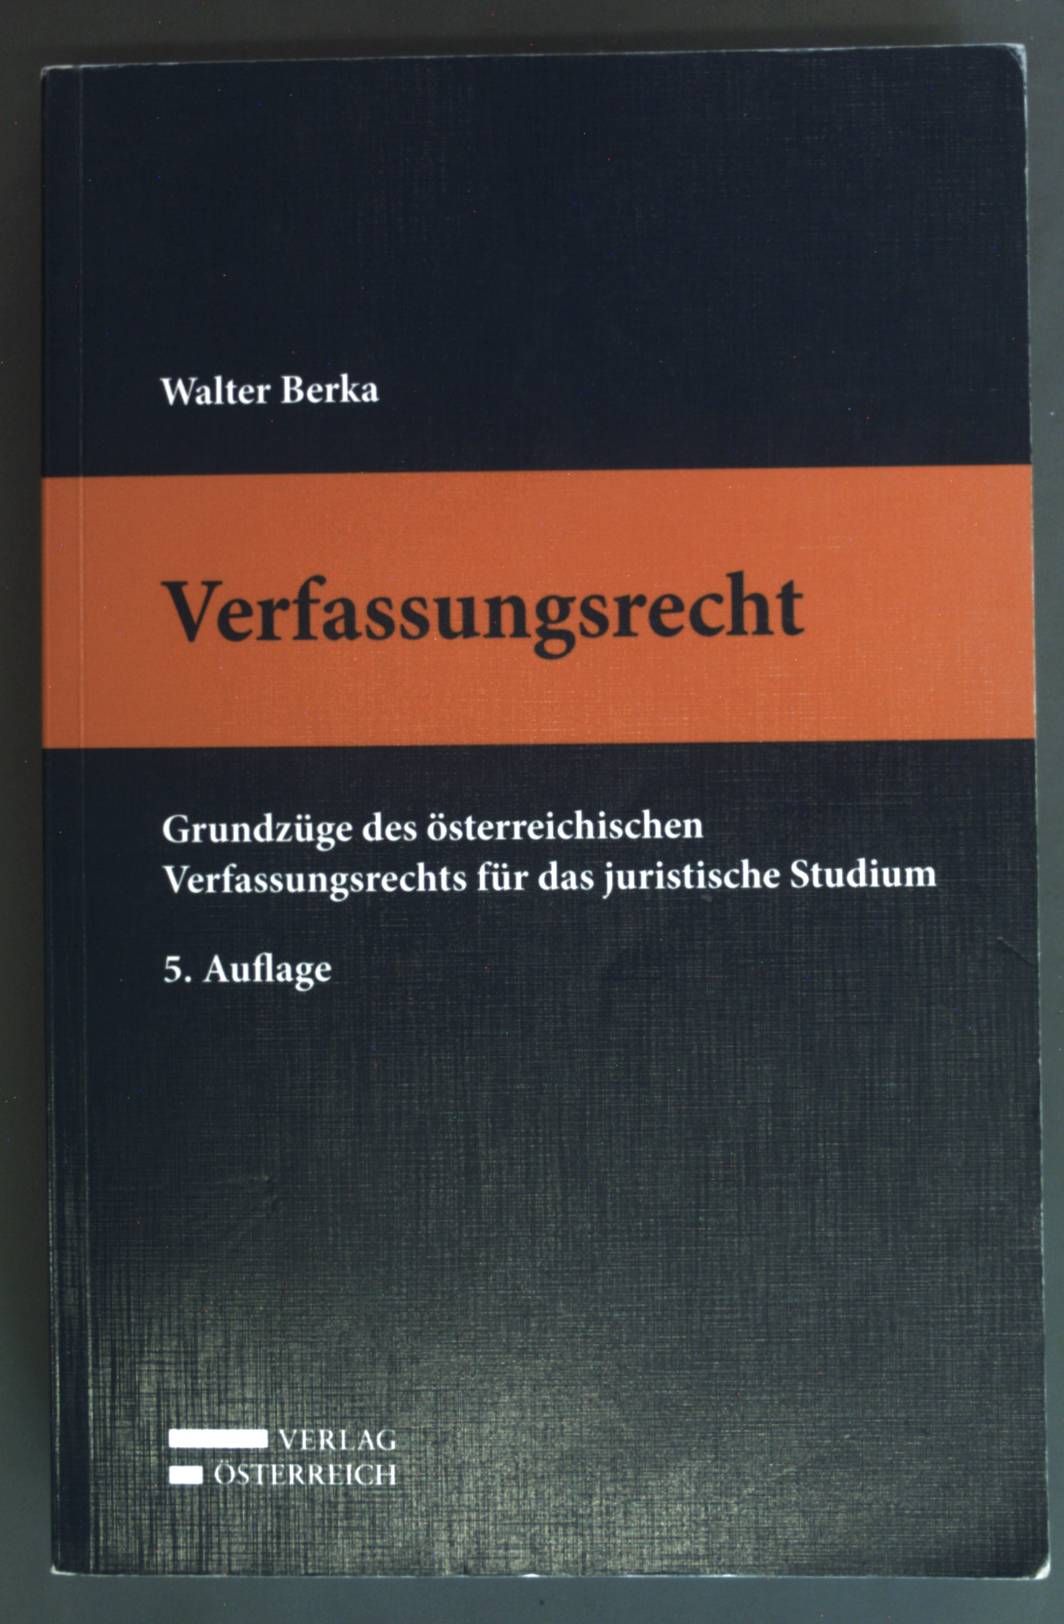 Verfassungsrecht : Grundzüge des österreichischen Verfassungsrechts für das juristische Studium. - Berka, Walter